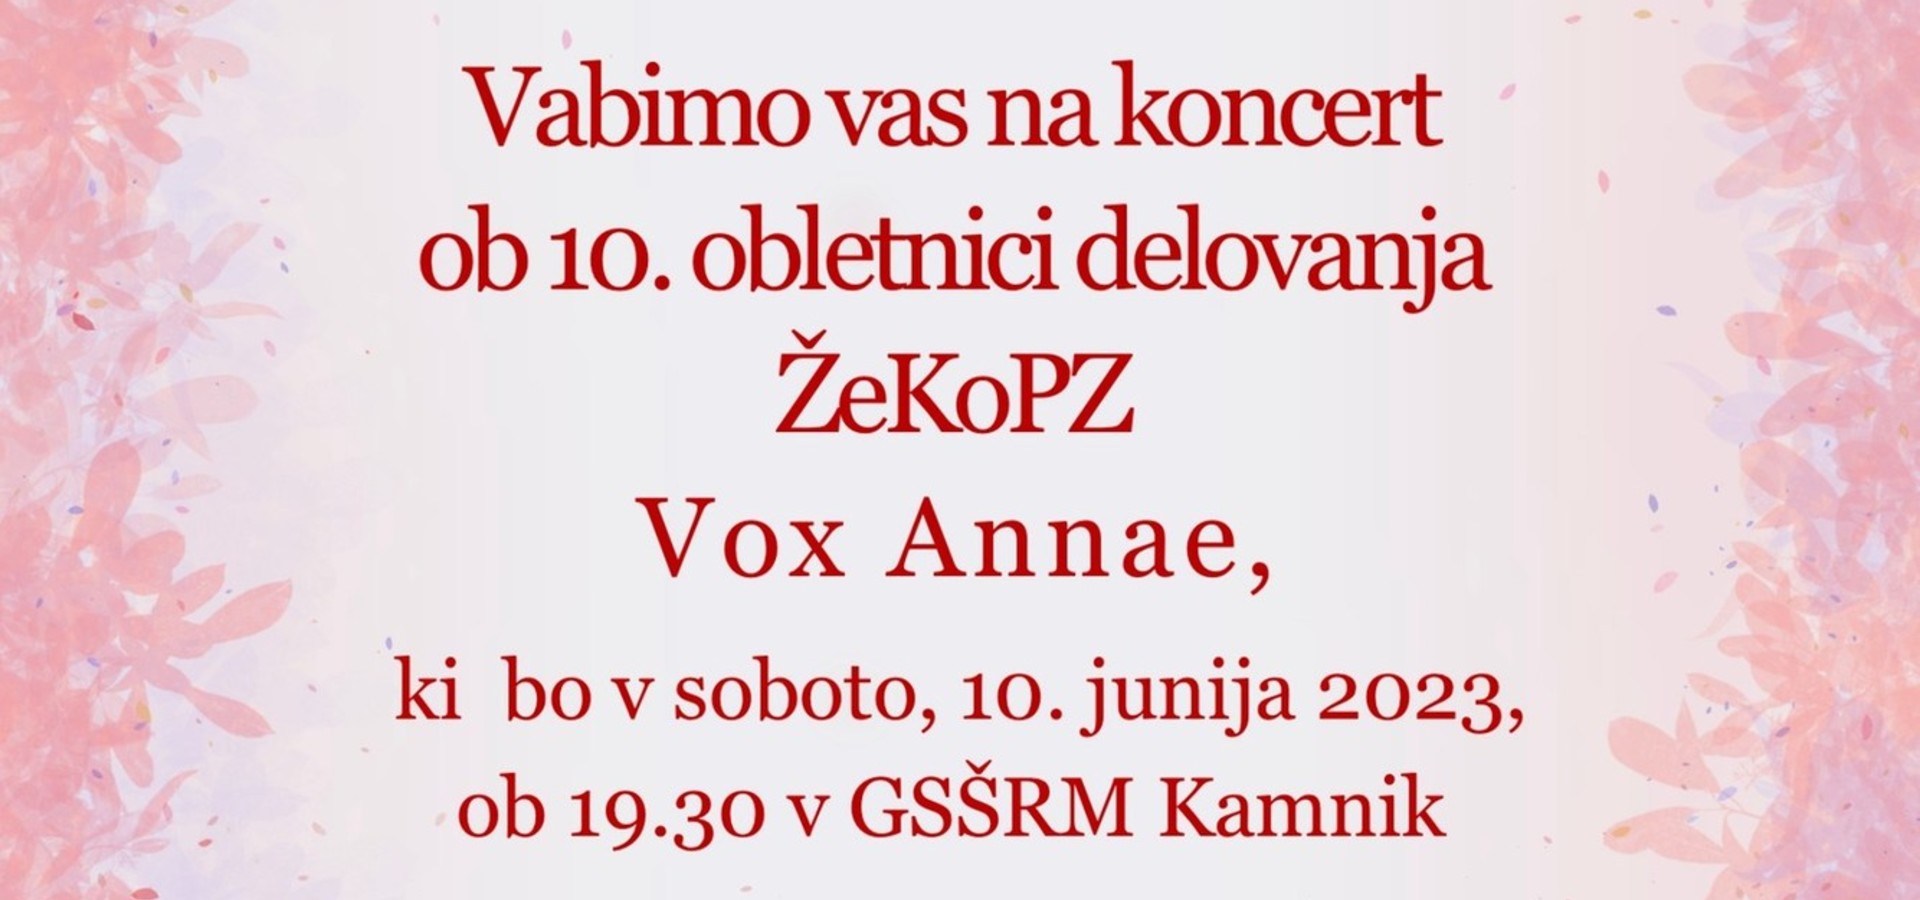 Koncert ob 10. obletnici delovanja ŽeKoPZ Vox Annae